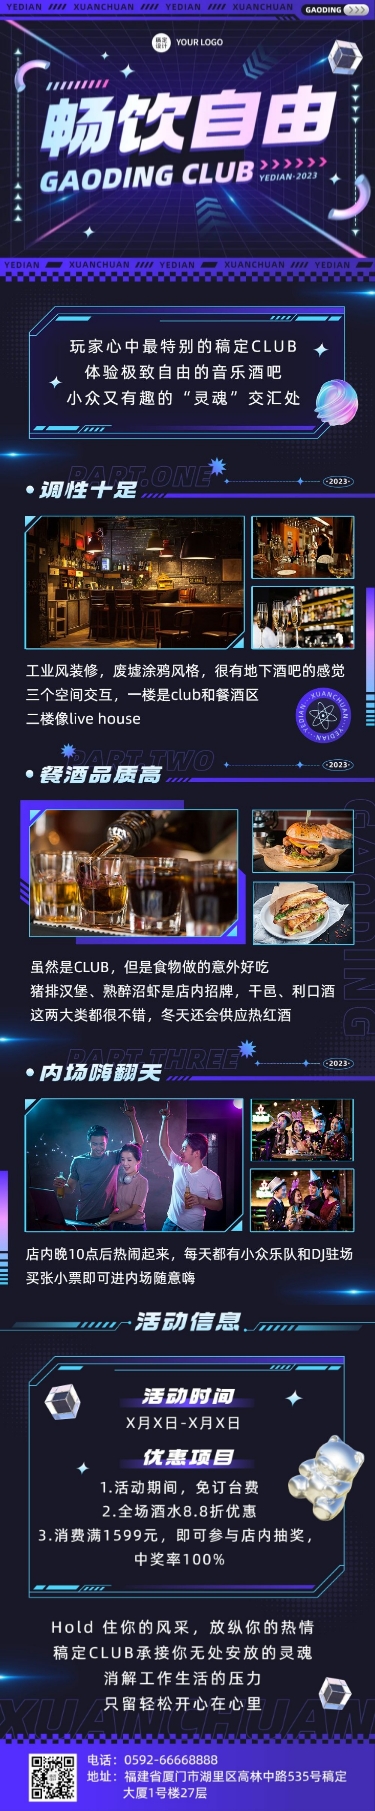 夜店酒吧宣传微信公众号文章长图预览效果